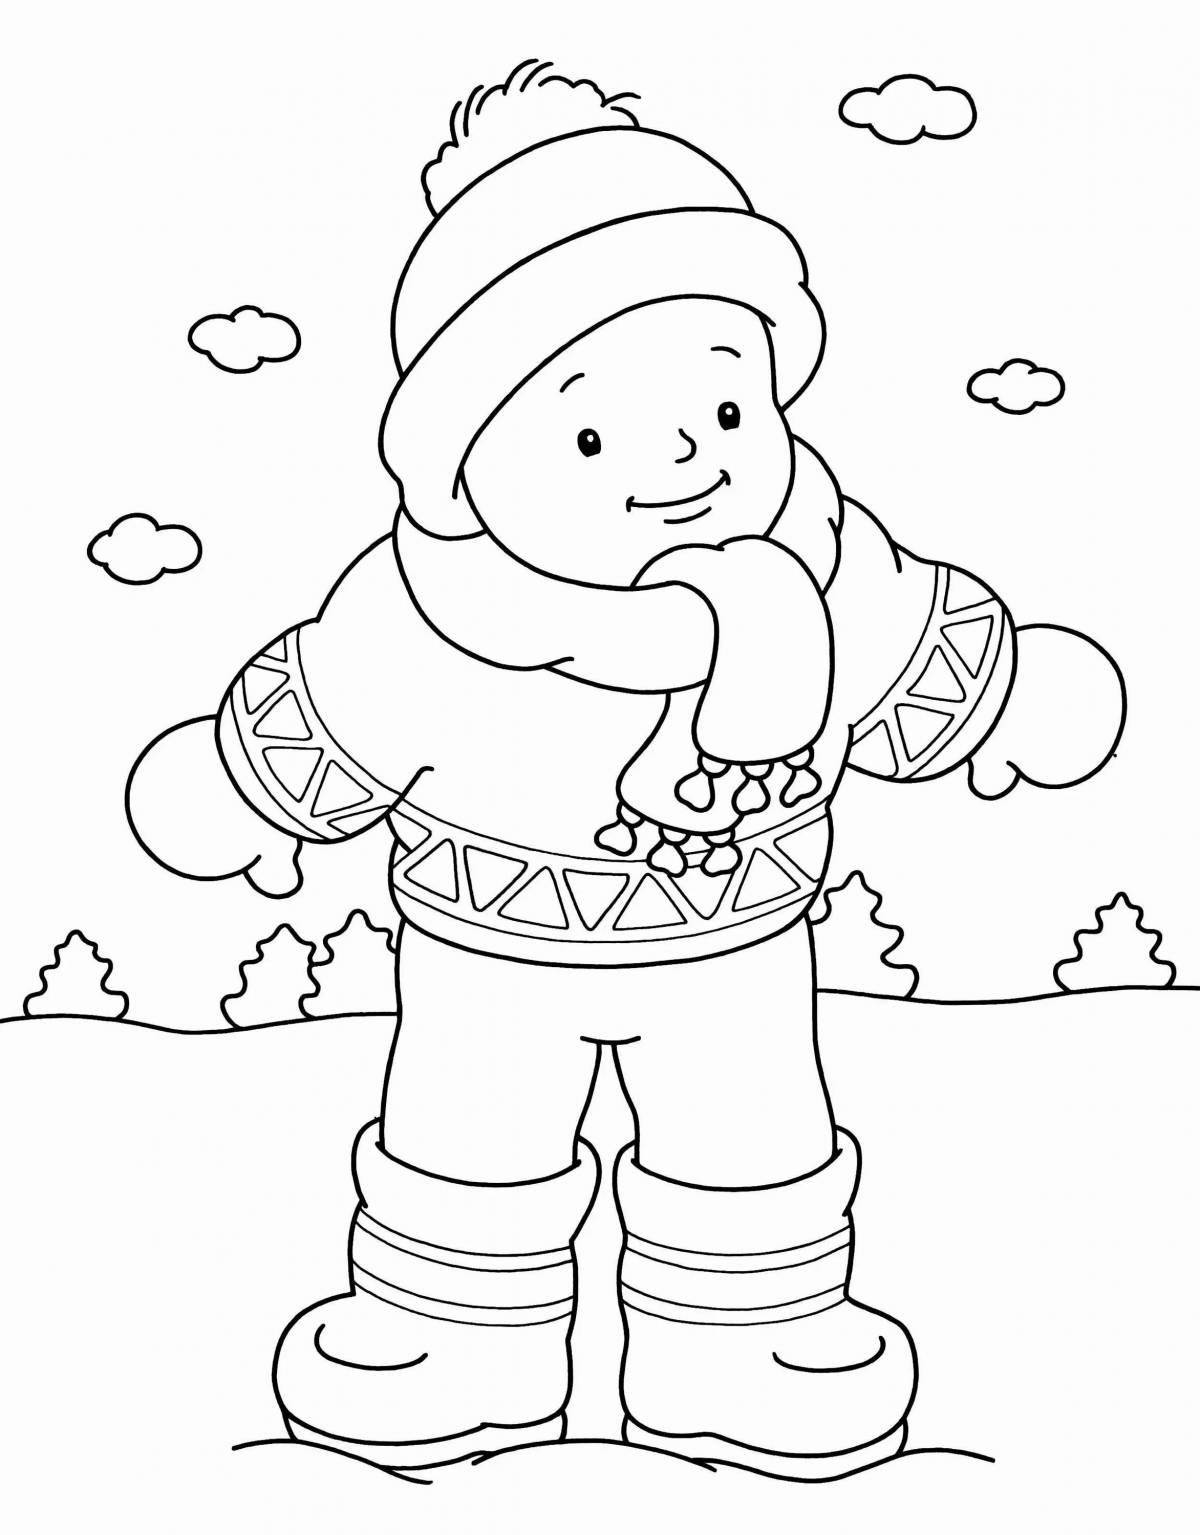 Креативная страница раскраски зимней одежды для детей 5-6 лет